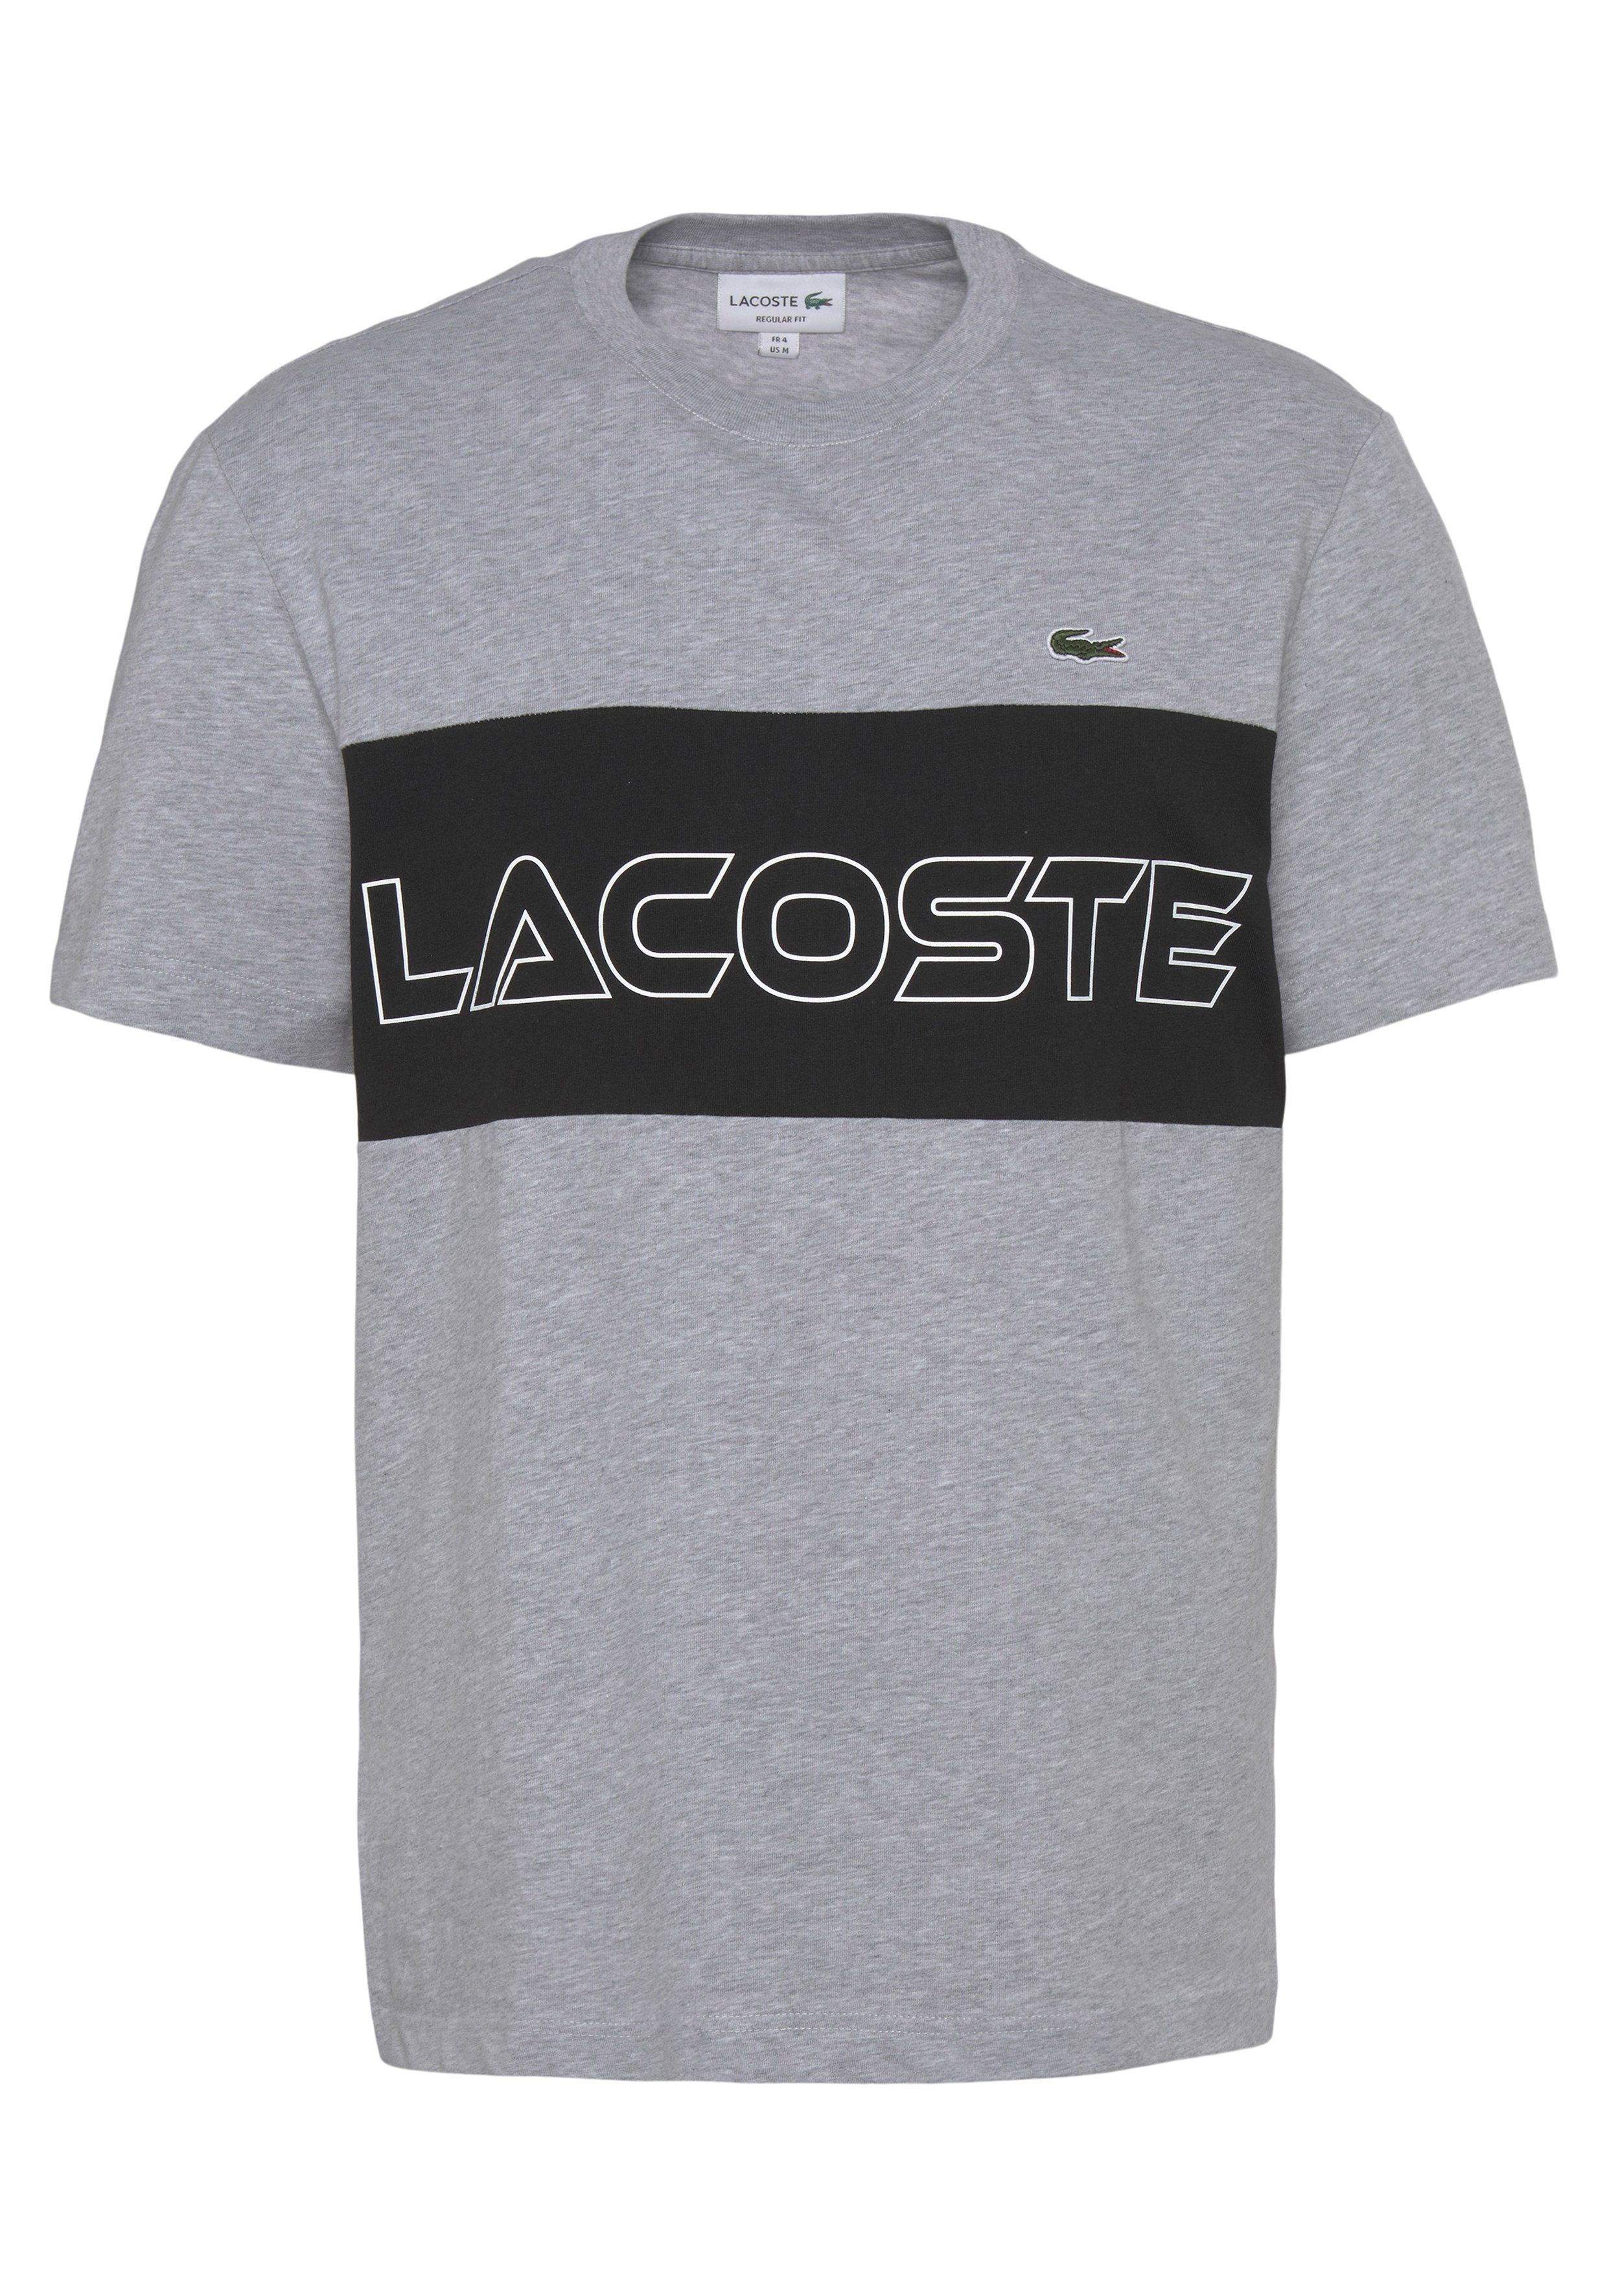 Lacoste T-Shirt T-SHIRT mit auf Print CHINE/BLACK SILVER Brust der großem